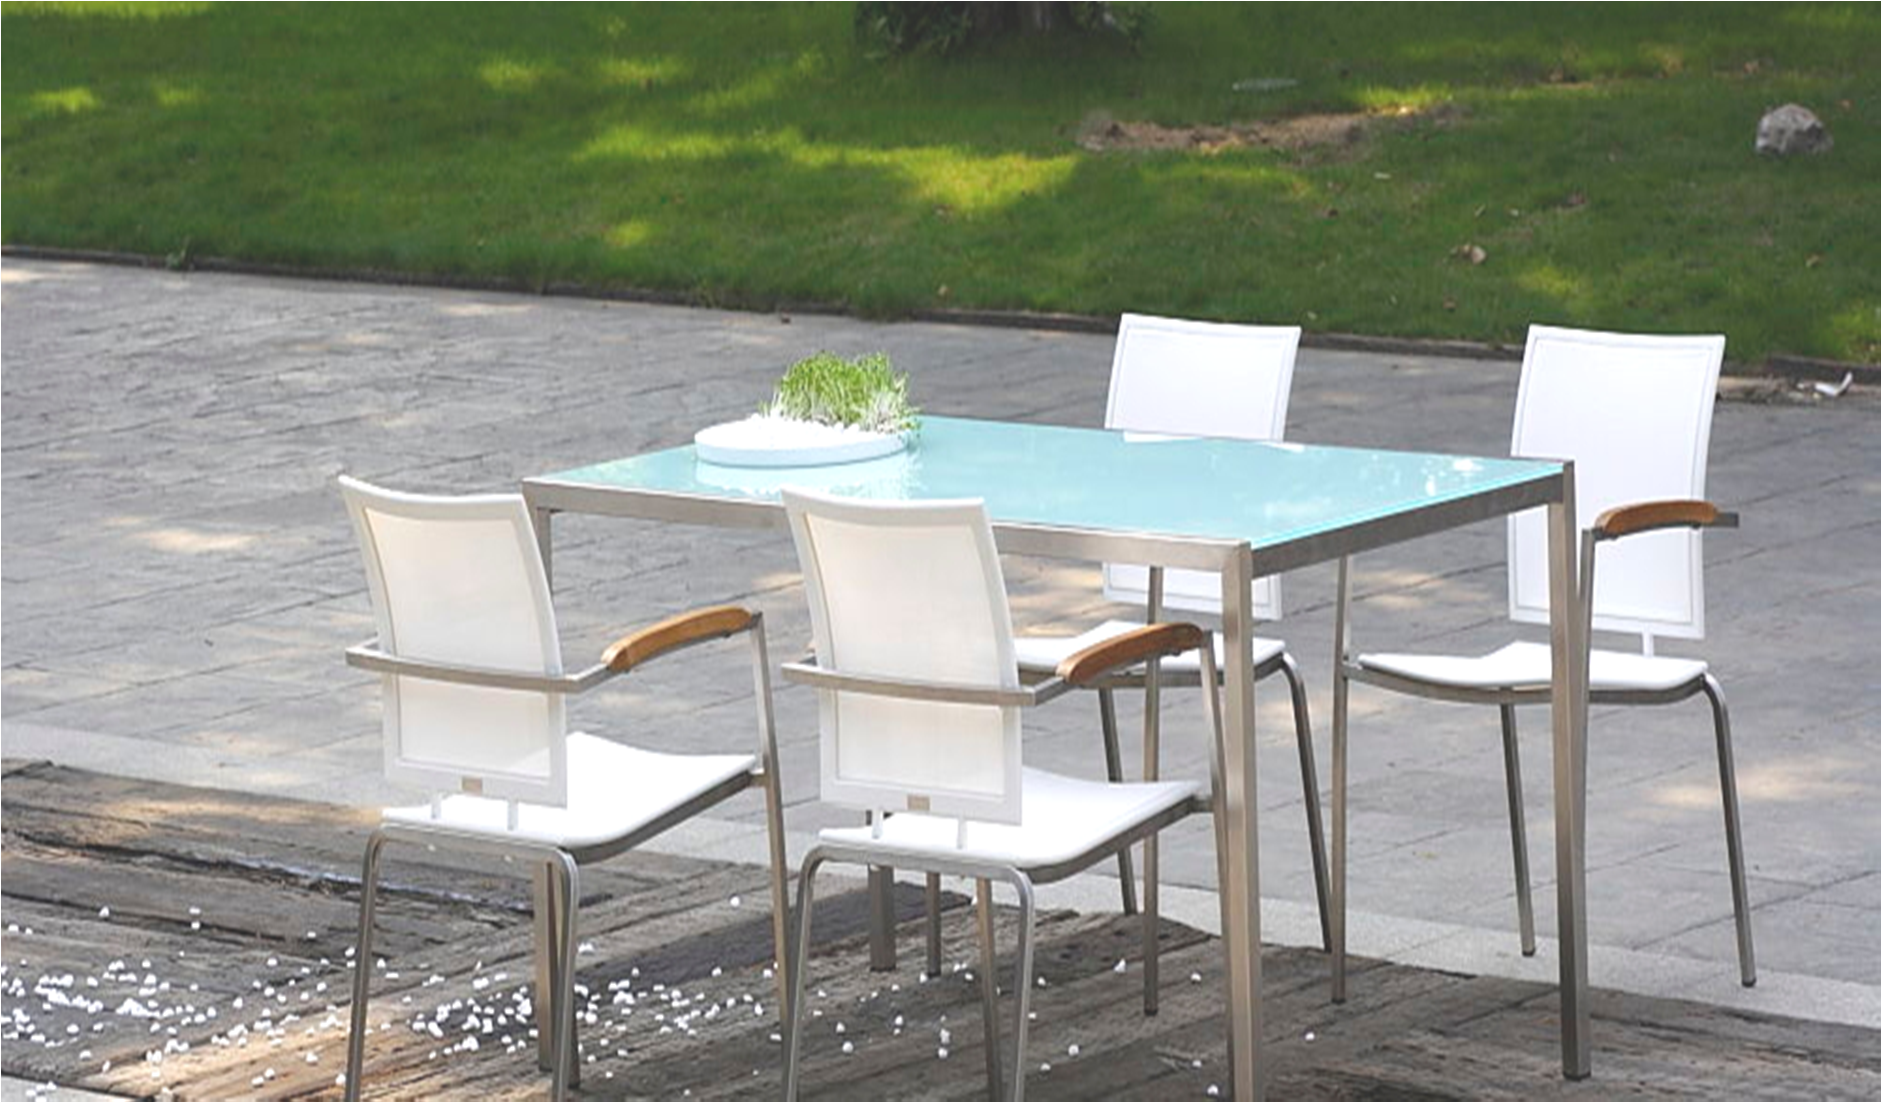 Open Space mod. Narciso by Corradi composto da: > tavolo con struttura in acciaio inox e vetro in cristallo temperato bianco.